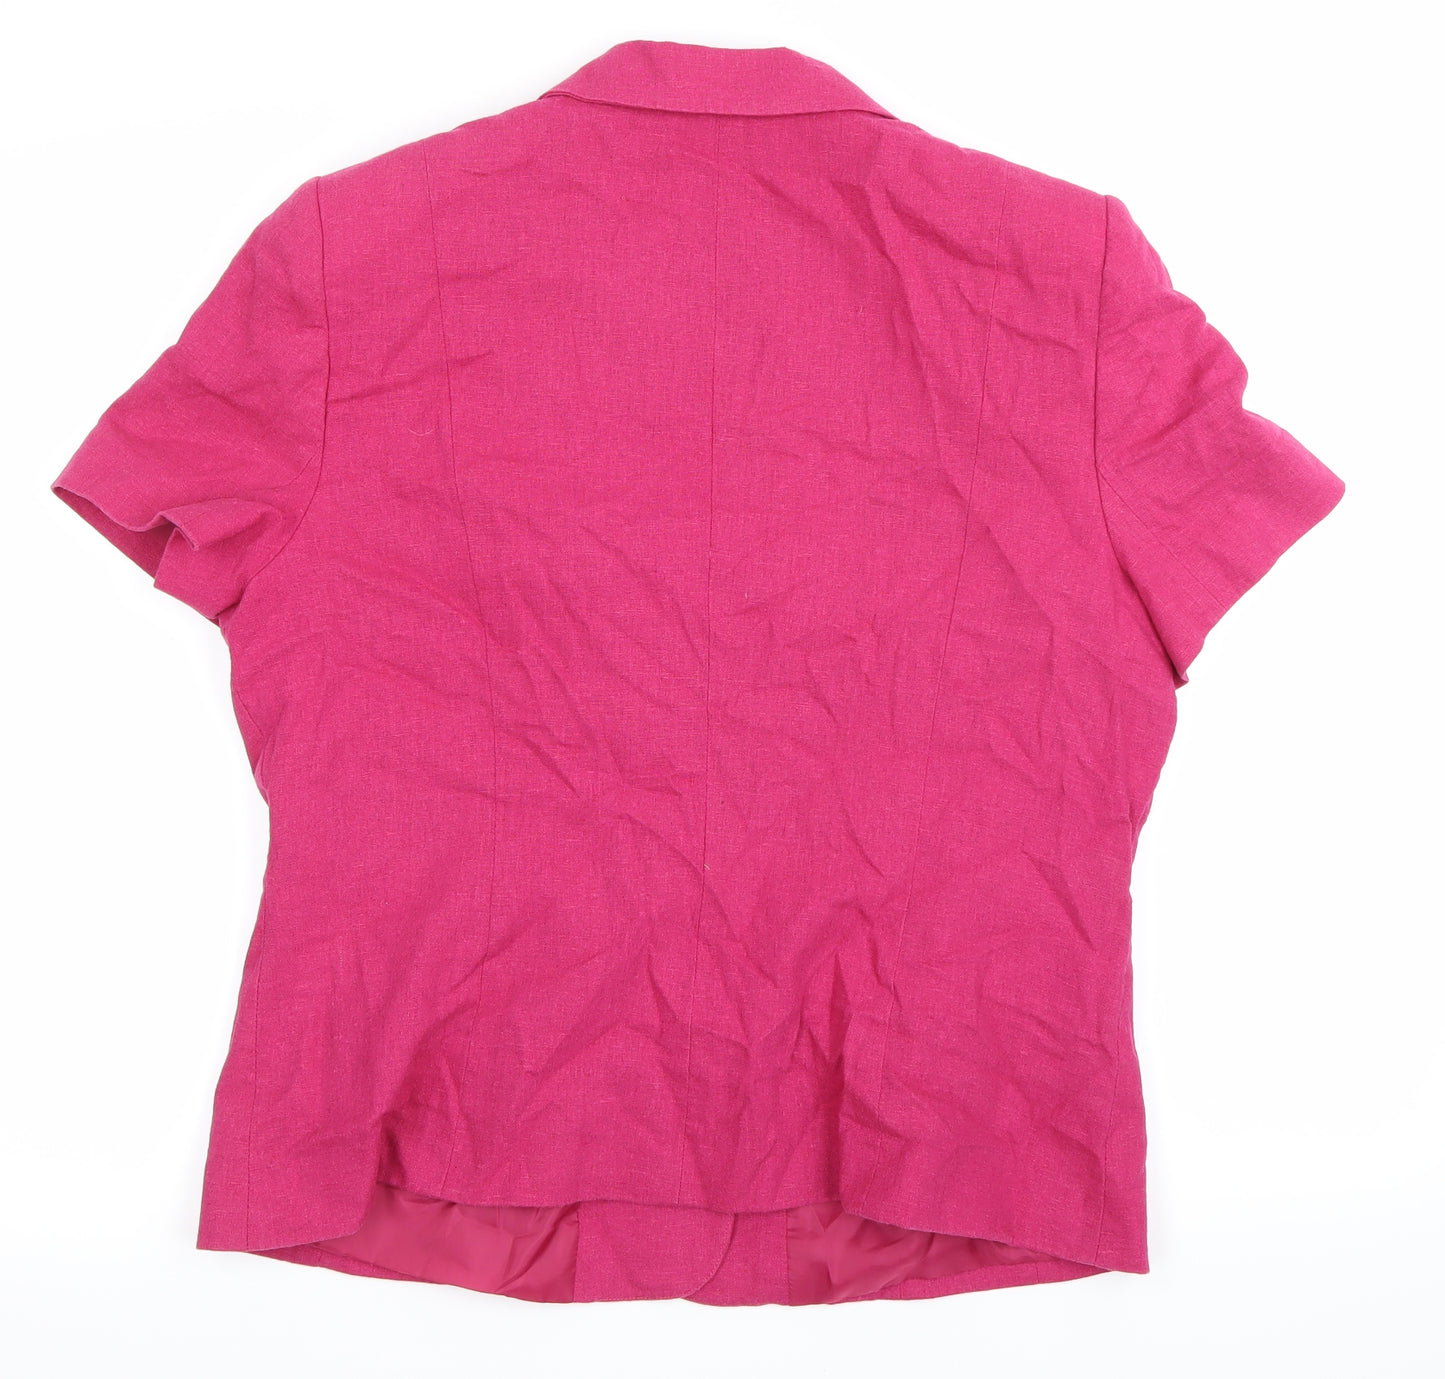 BHS Womens Pink   Jacket Blazer Size 16